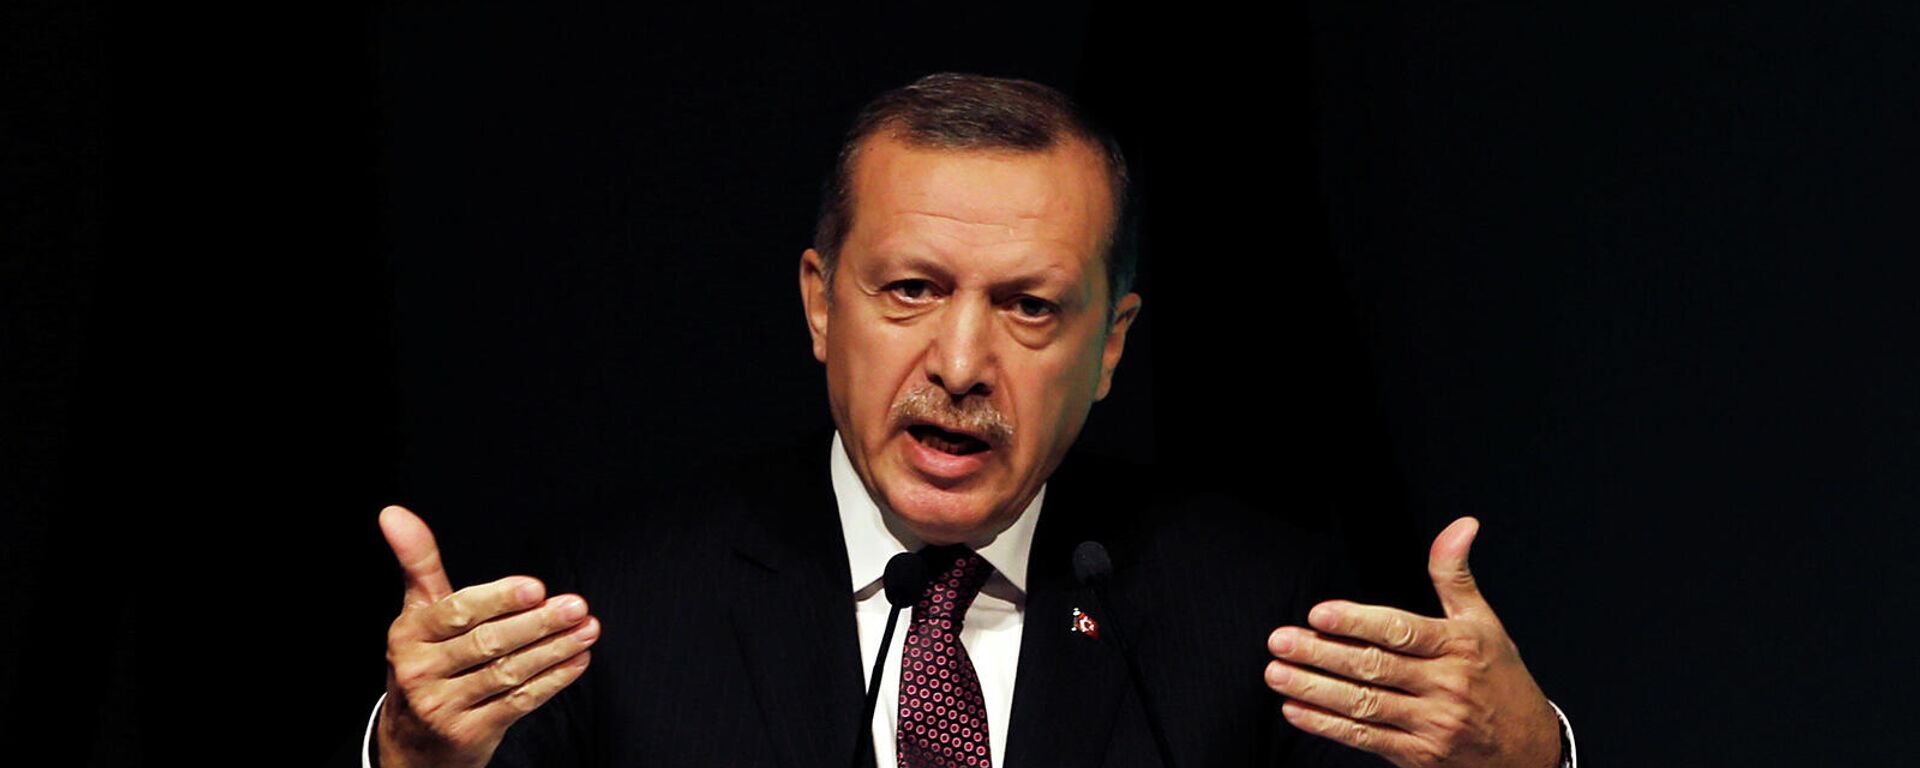 Премьер-миистр Турции Реджеп Тайип Эрдоган выступает с речью на симпозиуме по глобальной политике в отношении алкоголя (26 апреля 2013). Стамбул - Sputnik Армения, 1920, 20.11.2021